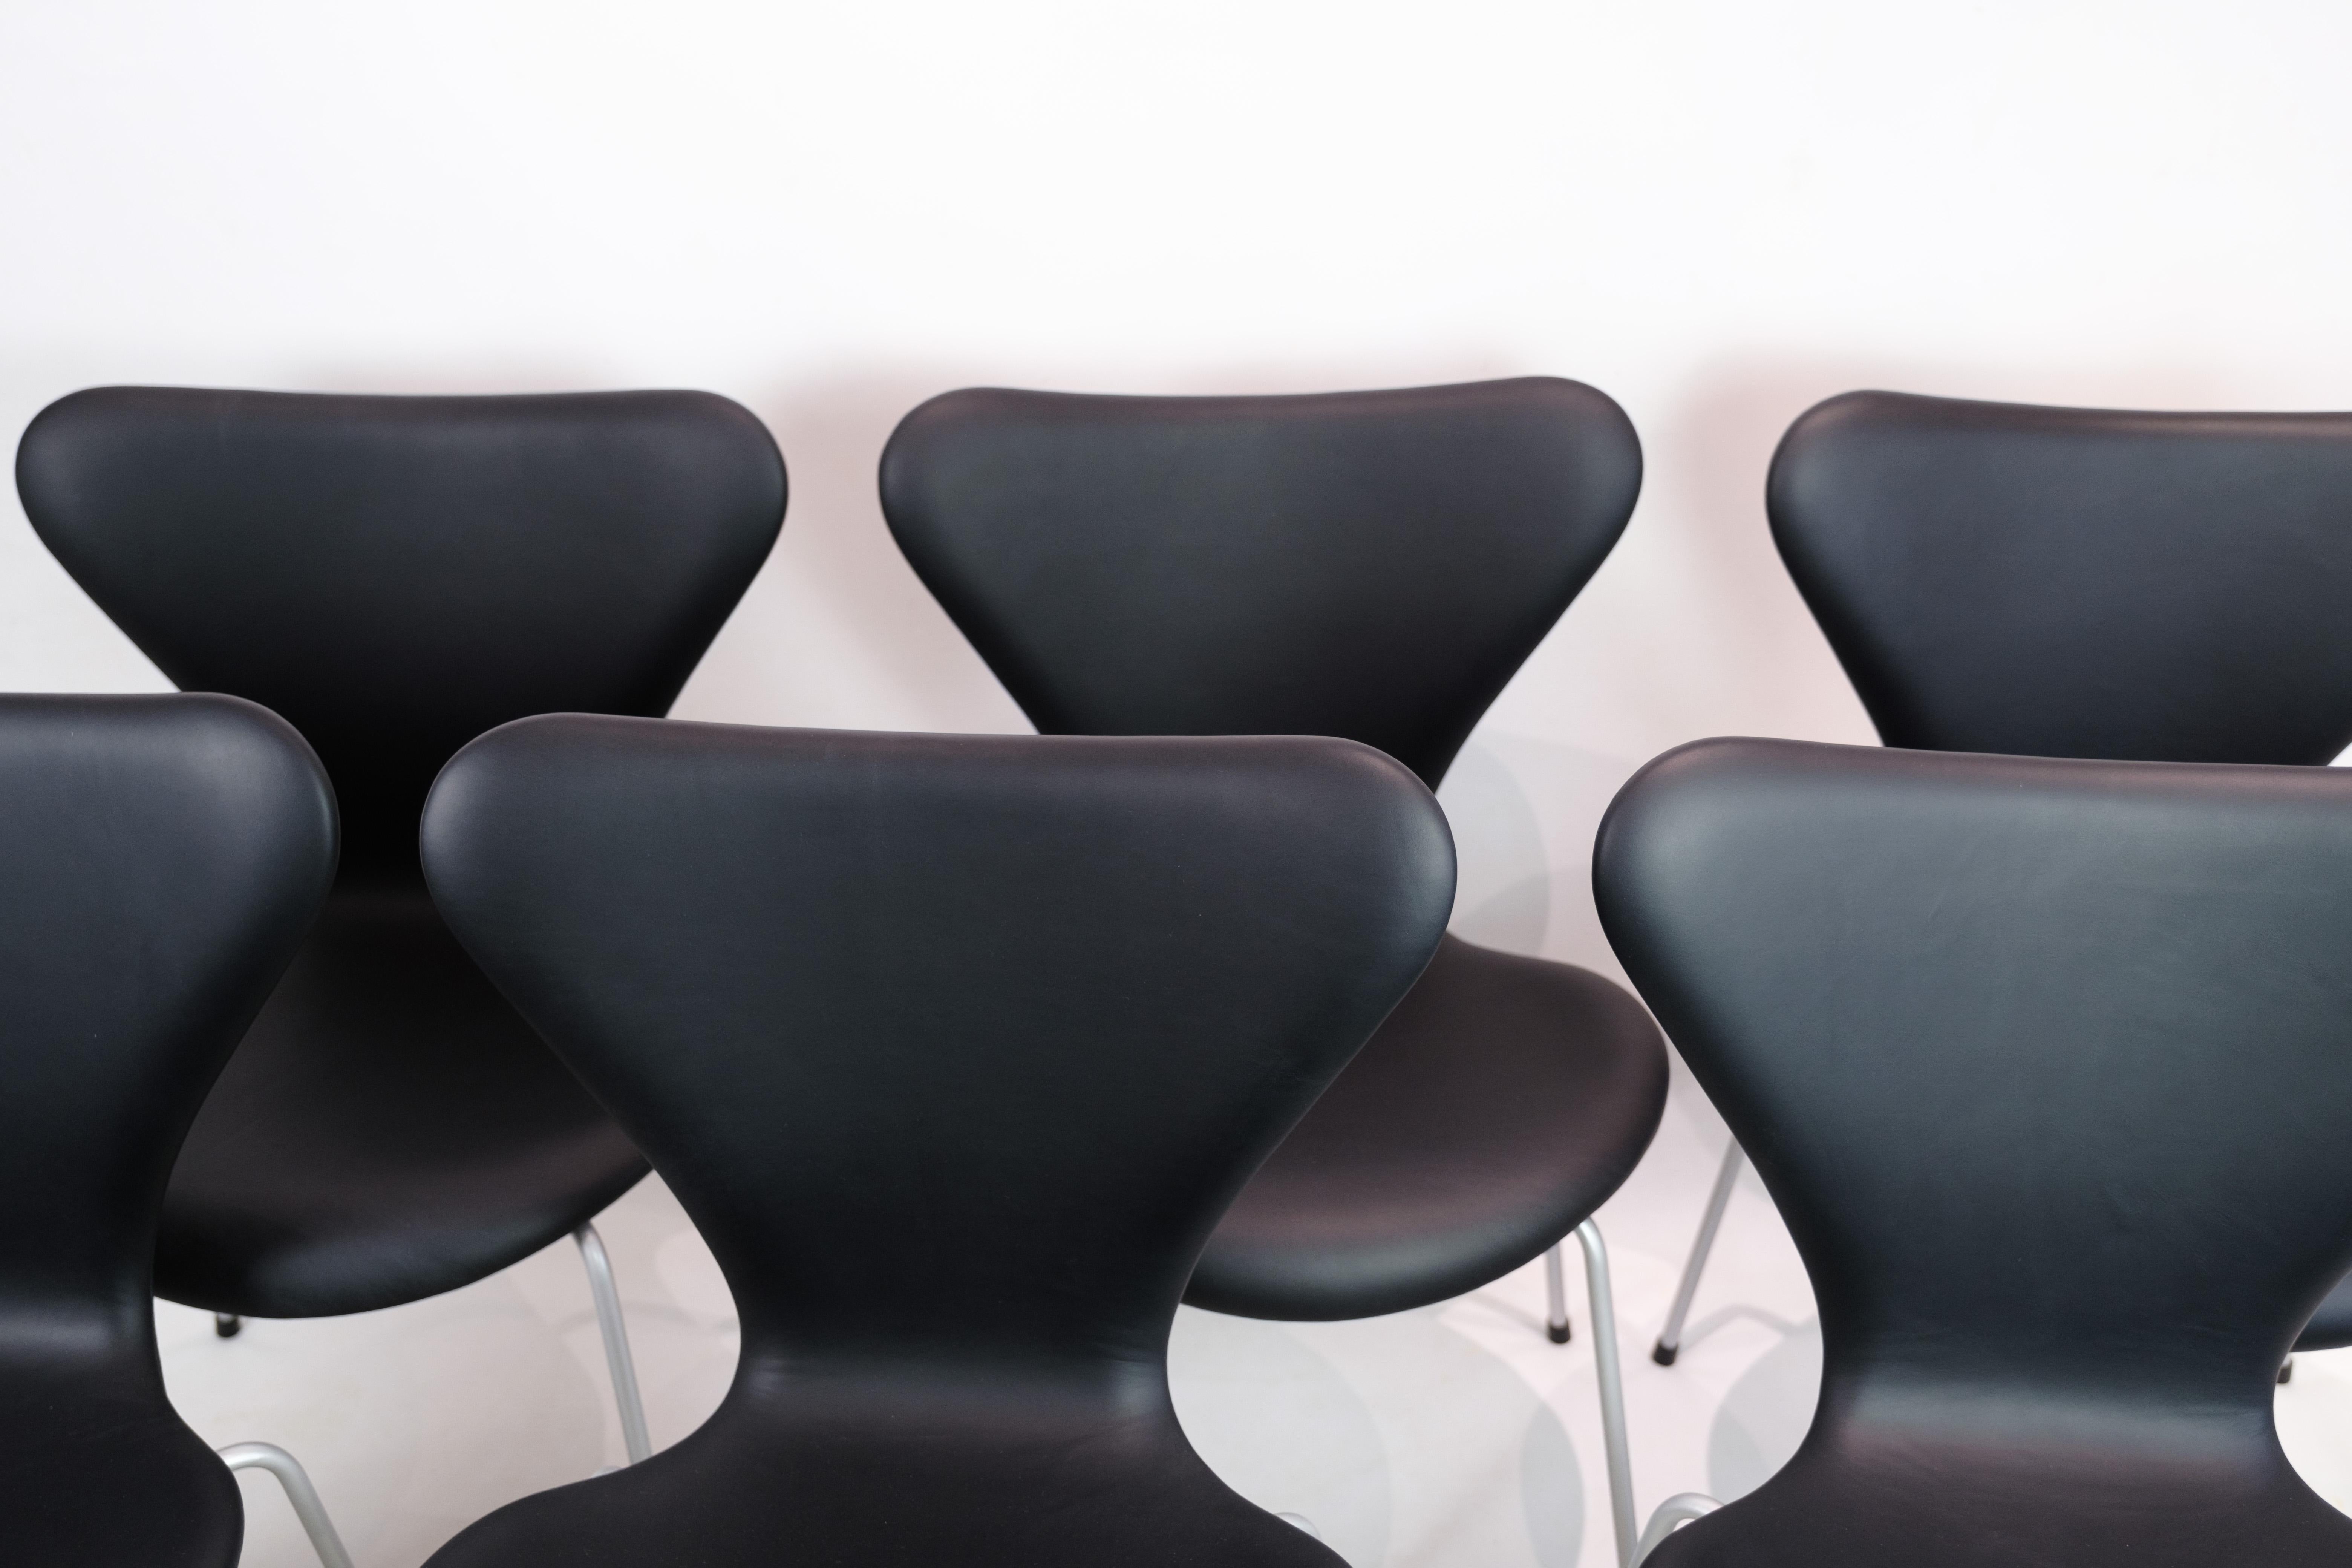 Ensemble exquis de 6 chaises modèle 3107 d'Arne Jacobsen, méticuleusement fabriquées en 1967 par Fritz Hansen, aujourd'hui magnifiquement réimaginées avec un nouveau revêtement en cuir noir élégant.

Ces chaises emblématiques, nées de l'esprit